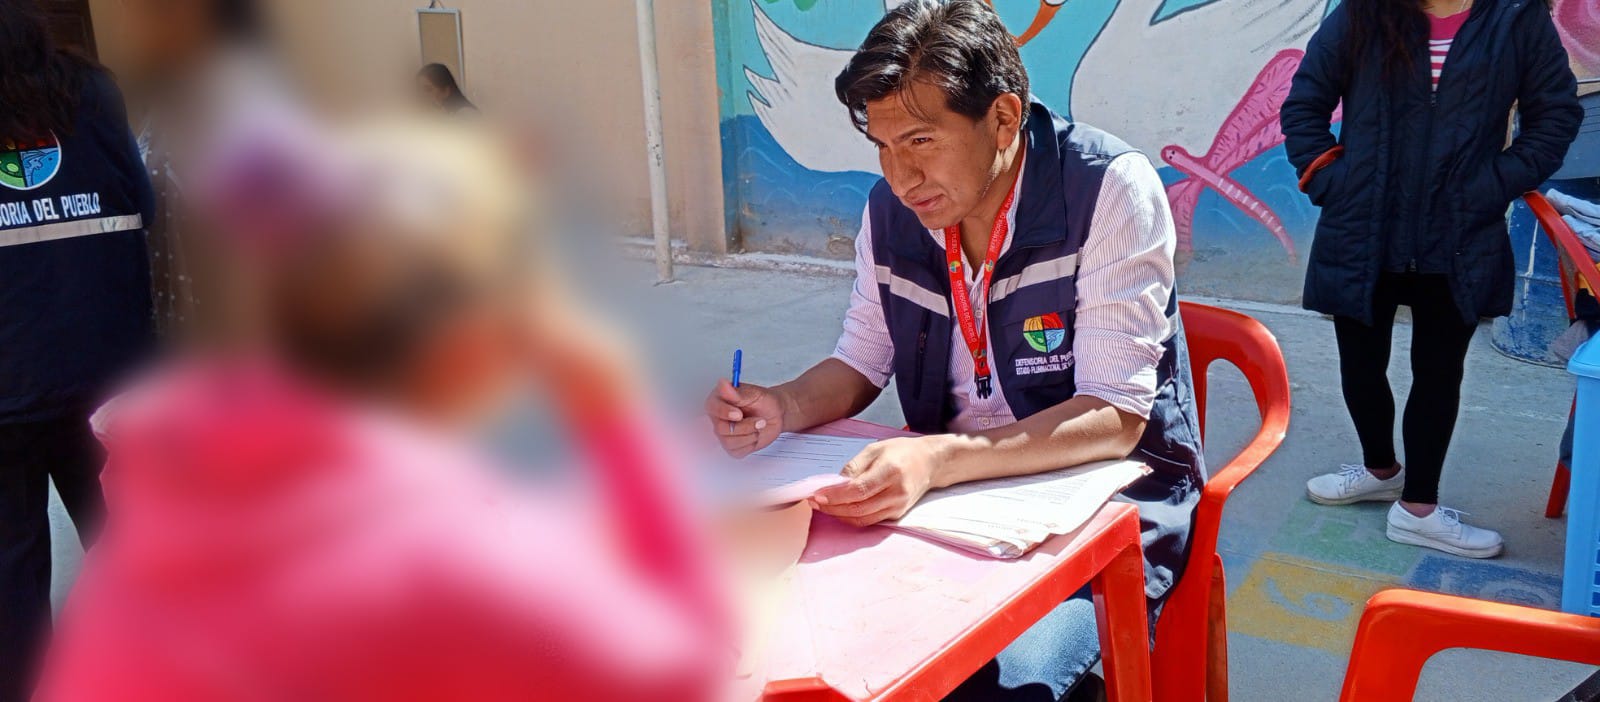 La Paz: Defensoría del Pueblo registró 20 casos de vulneración de derechos en el Centro Penitenciario Femenino de “Miraflores”